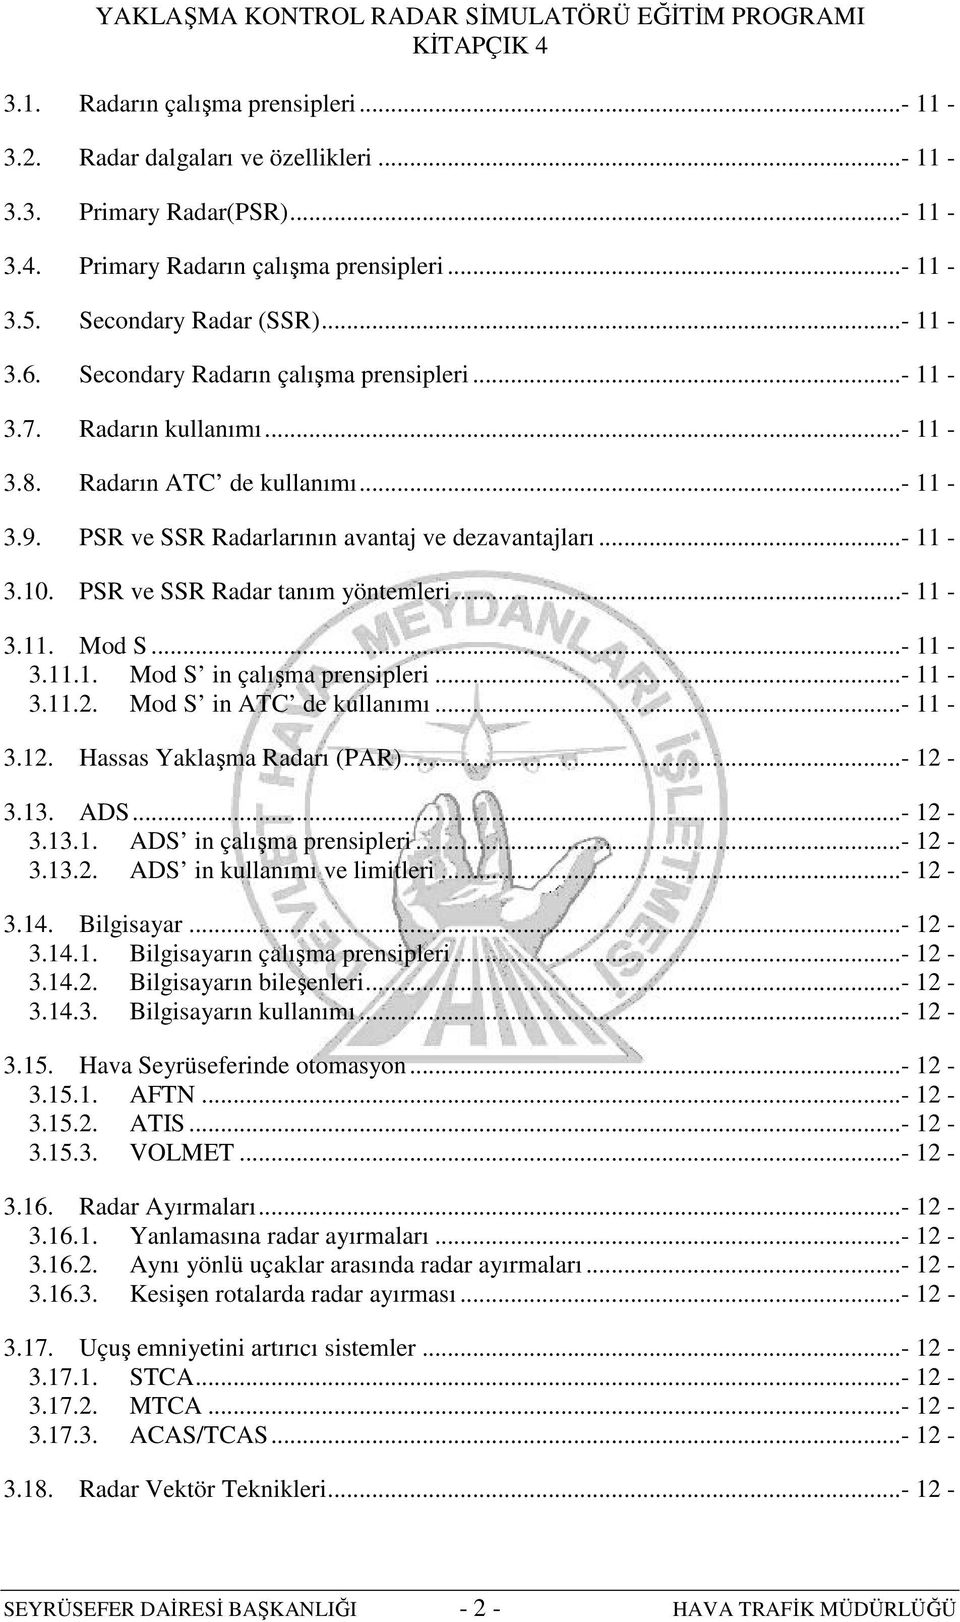 PSR ve SSR Radar tanım yöntemleri...- 11-3.11. Mod S...- 11-3.11.1. Mod S in çalışma prensipleri...- 11-3.11.2. Mod S in ATC de kullanımı...- 11-3.12. Hassas Yaklaşma Radarı (PAR)...- 12-3.13. ADS.